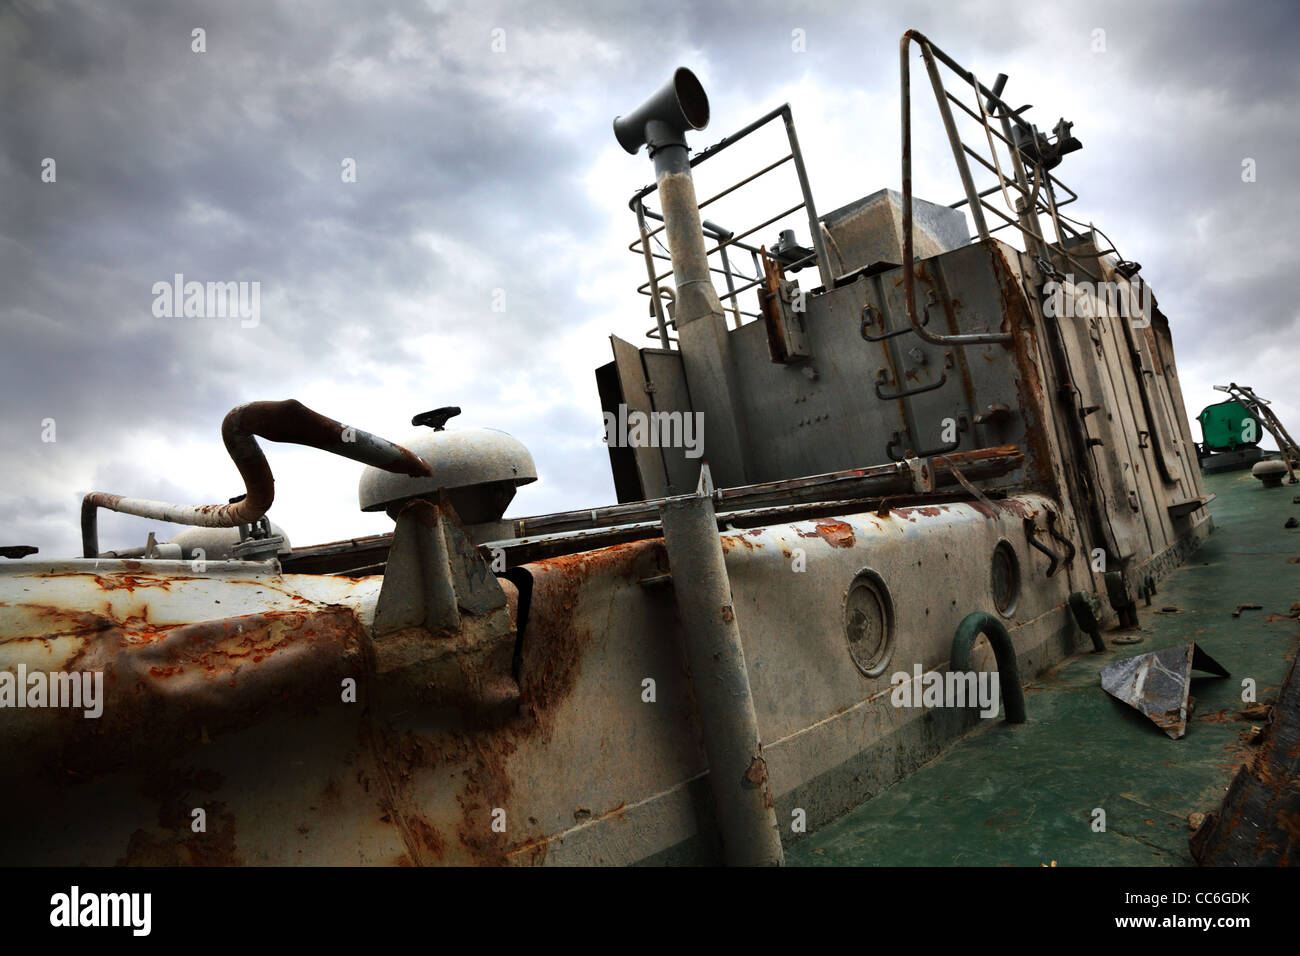 Das Oberdeck der alten, zerstörten, verlassene Boot auf dramatische Himmelshintergrund. Stockfoto